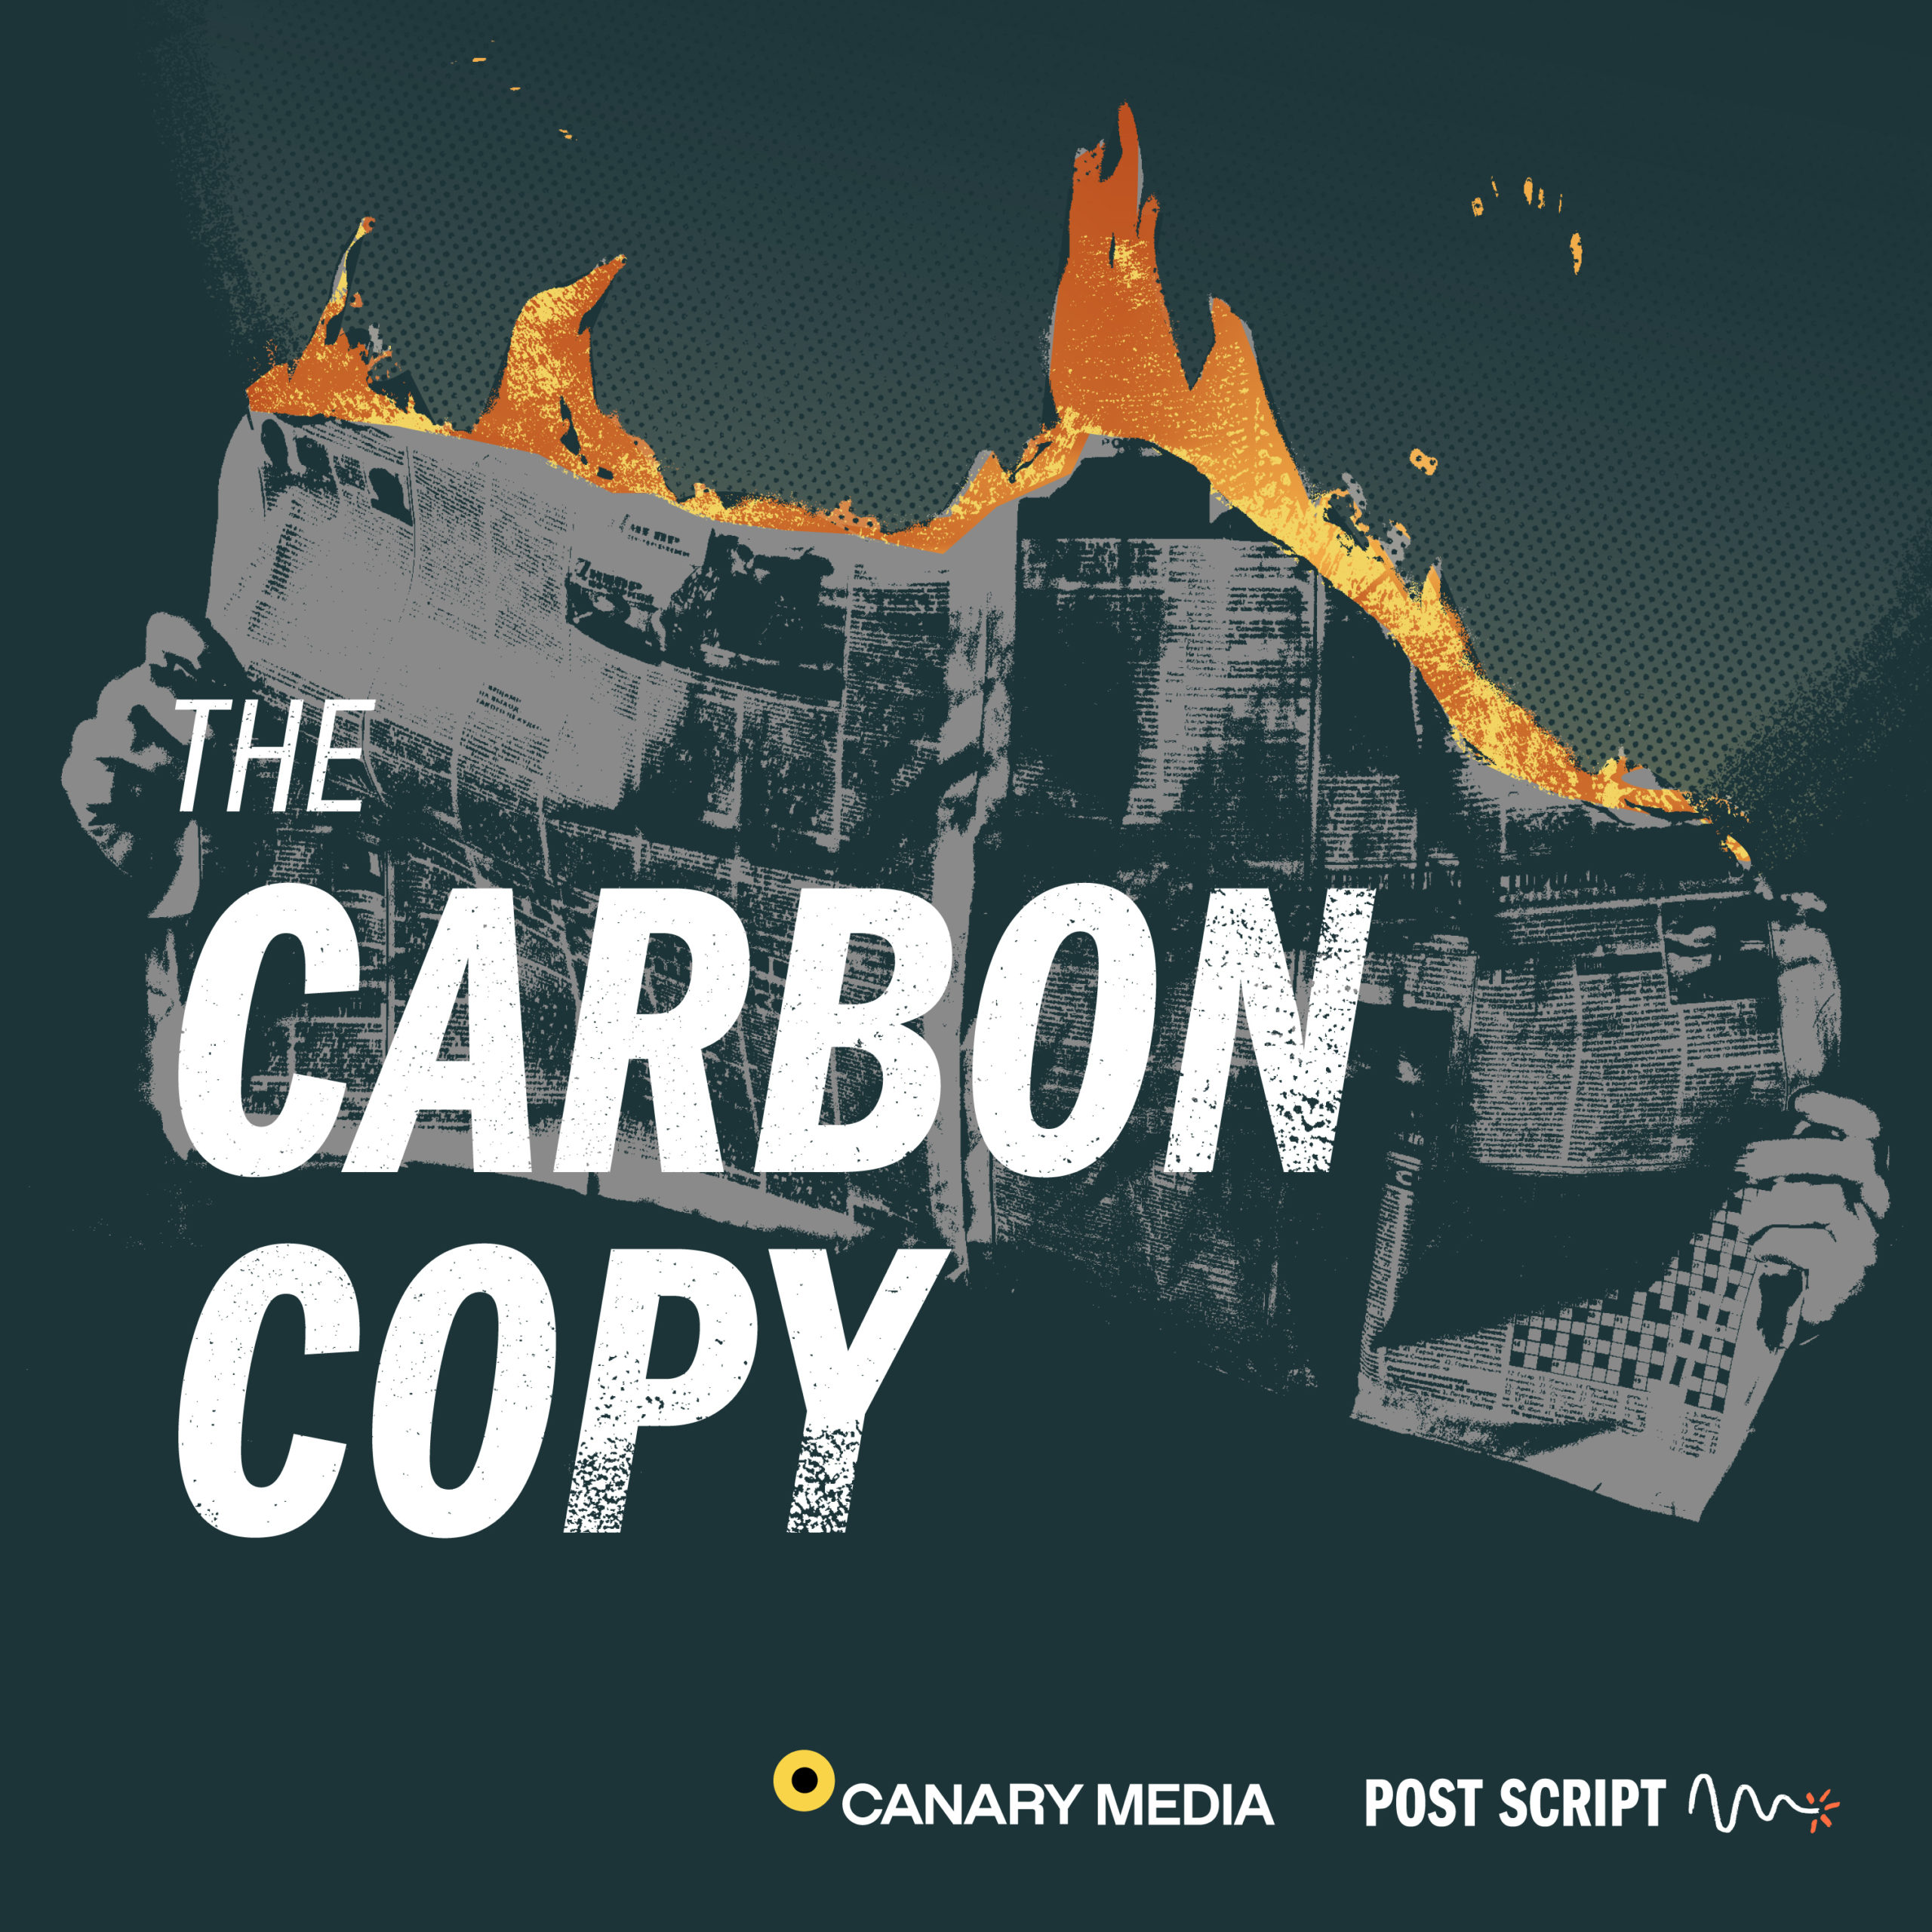 Carbon Copy